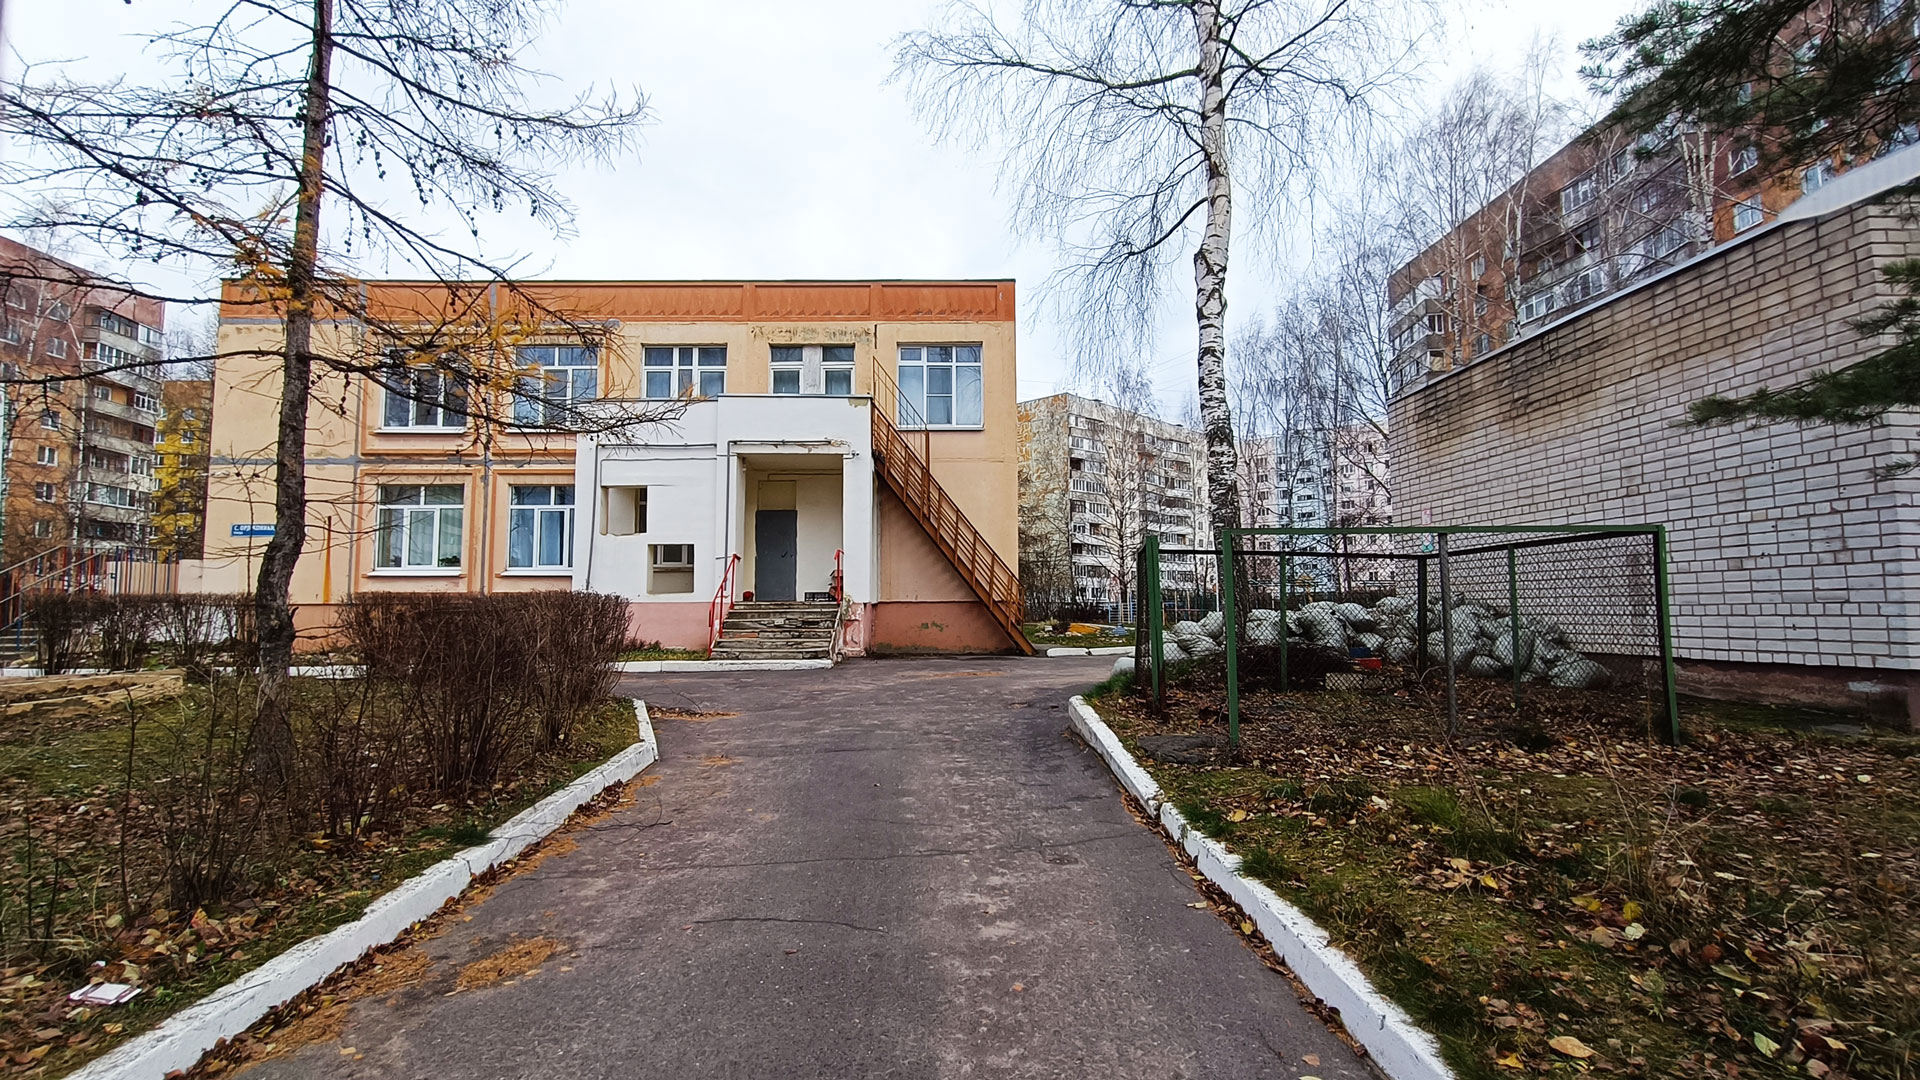 Детский сад 151 Ярославль: общий вид здания.